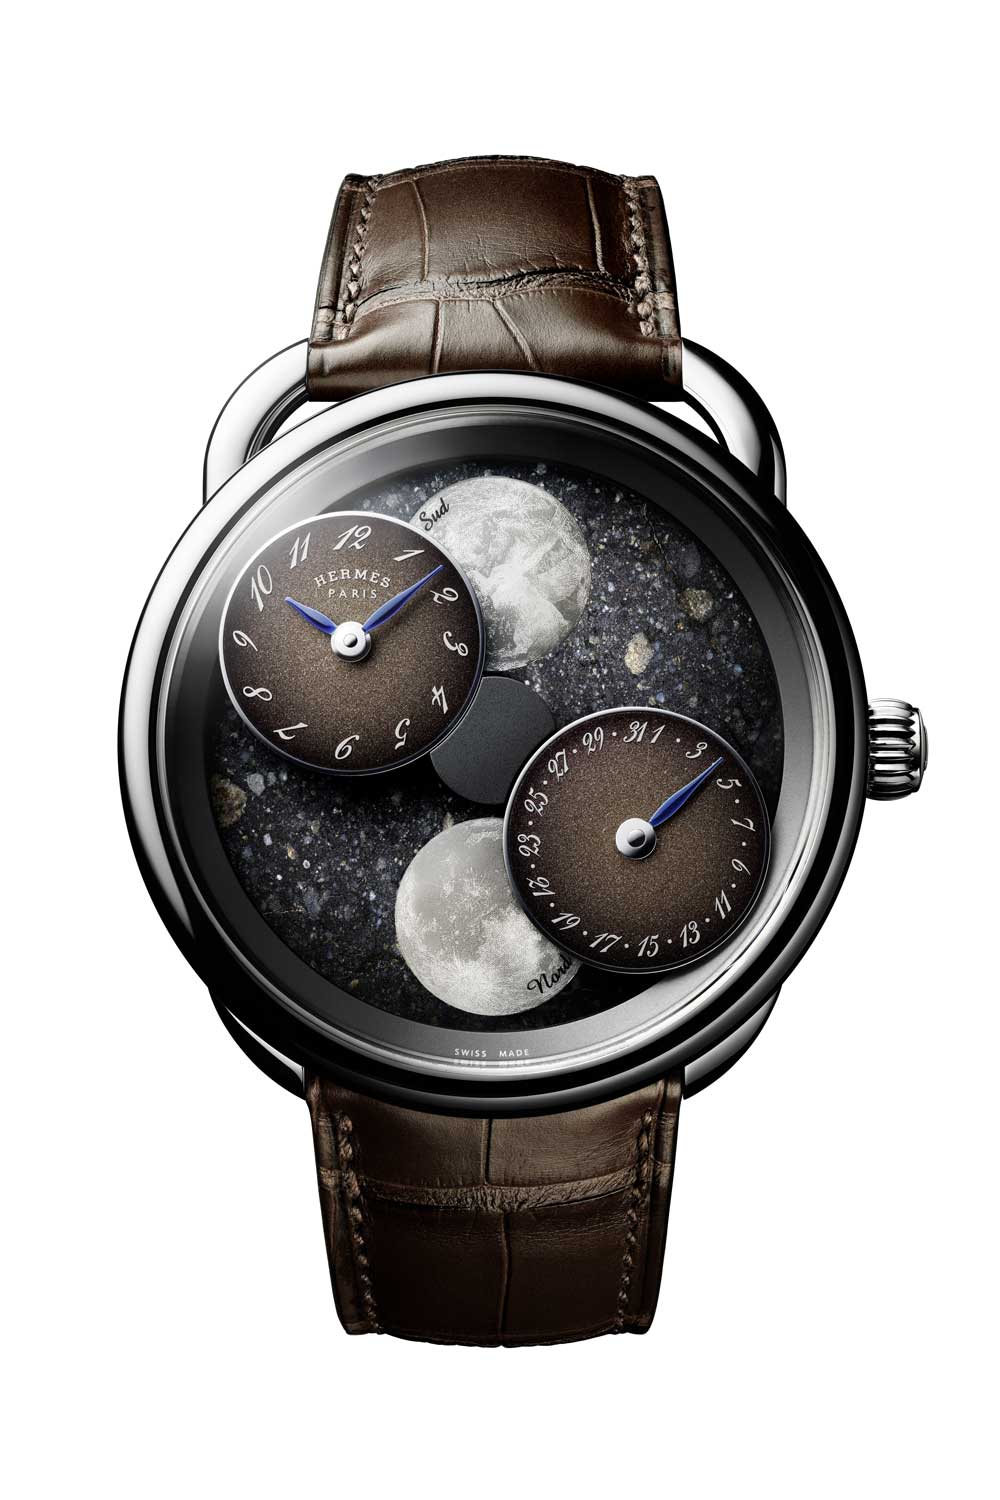 The Hermès Arceau L’Heure de la Lune with Lunar meteorite dial, limited to 36 pieces worldwide.